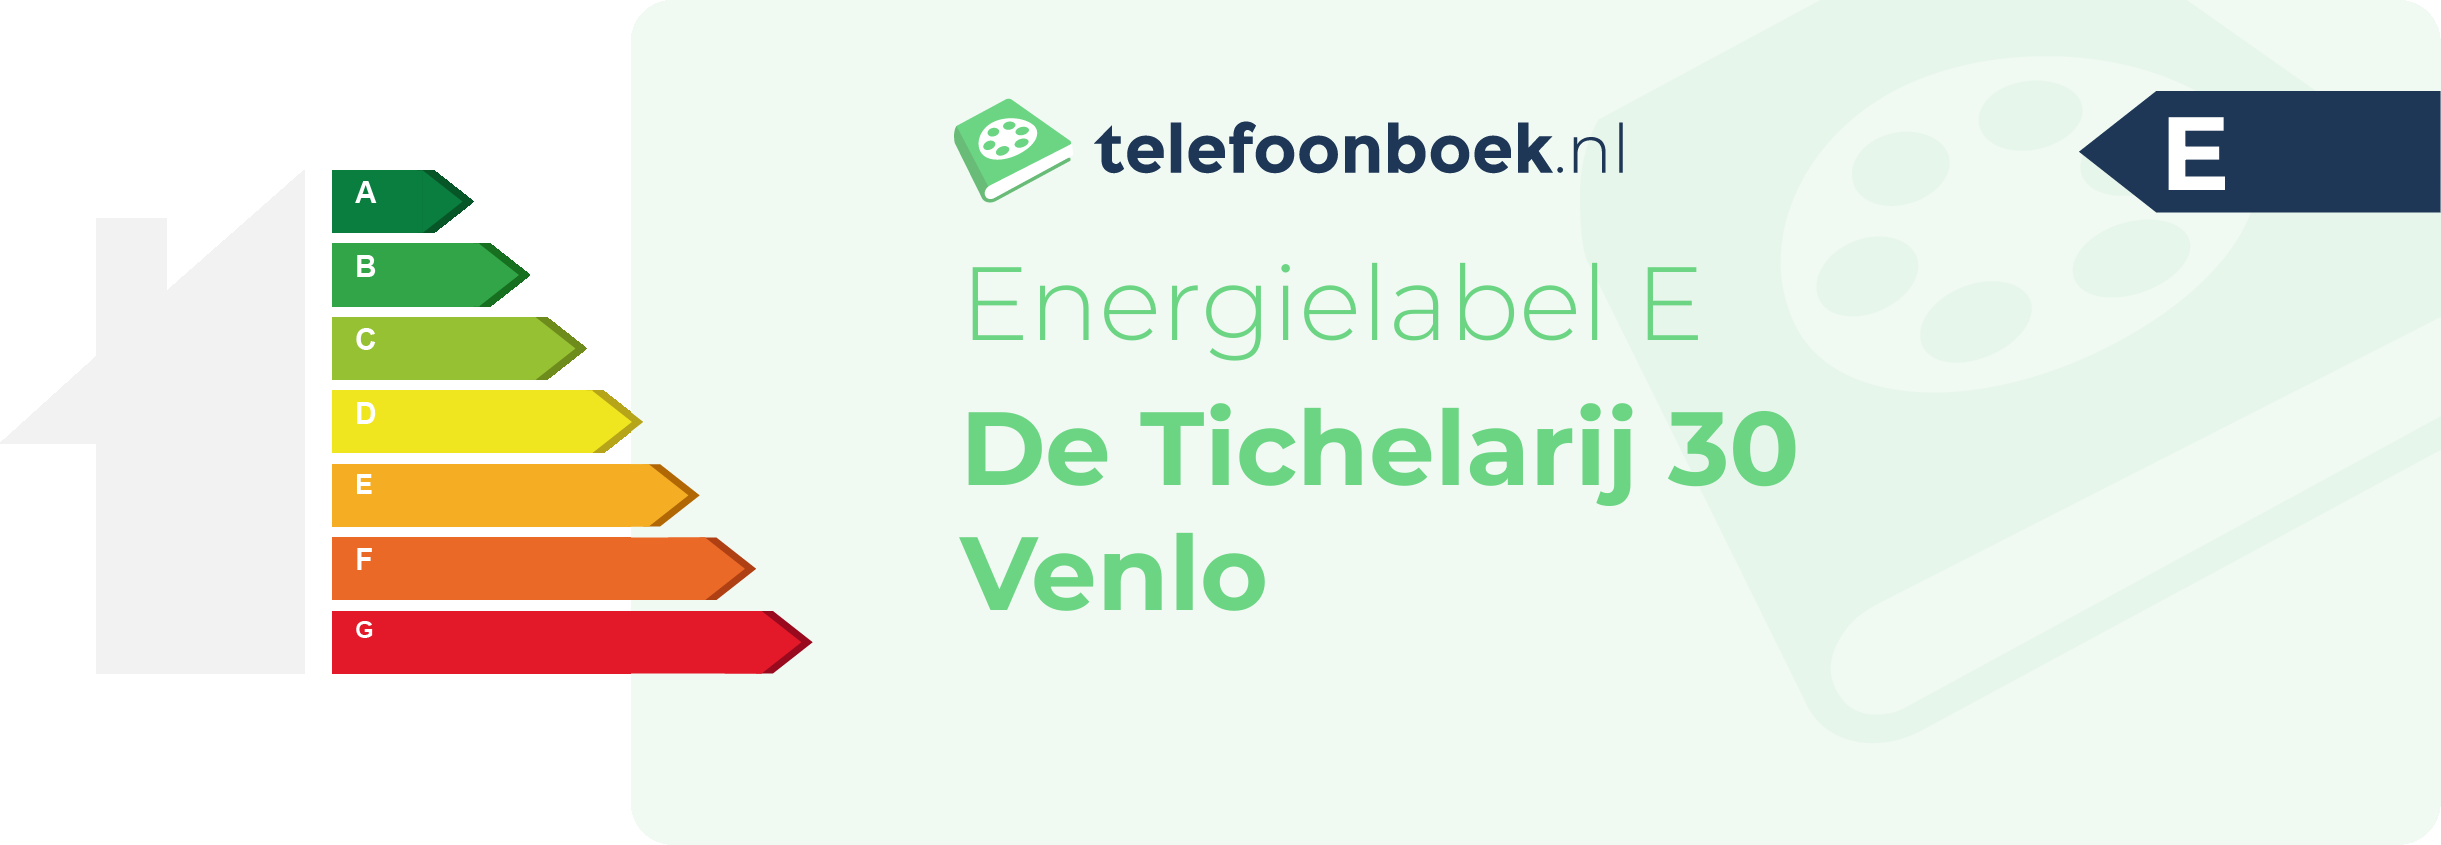 Energielabel De Tichelarij 30 Venlo